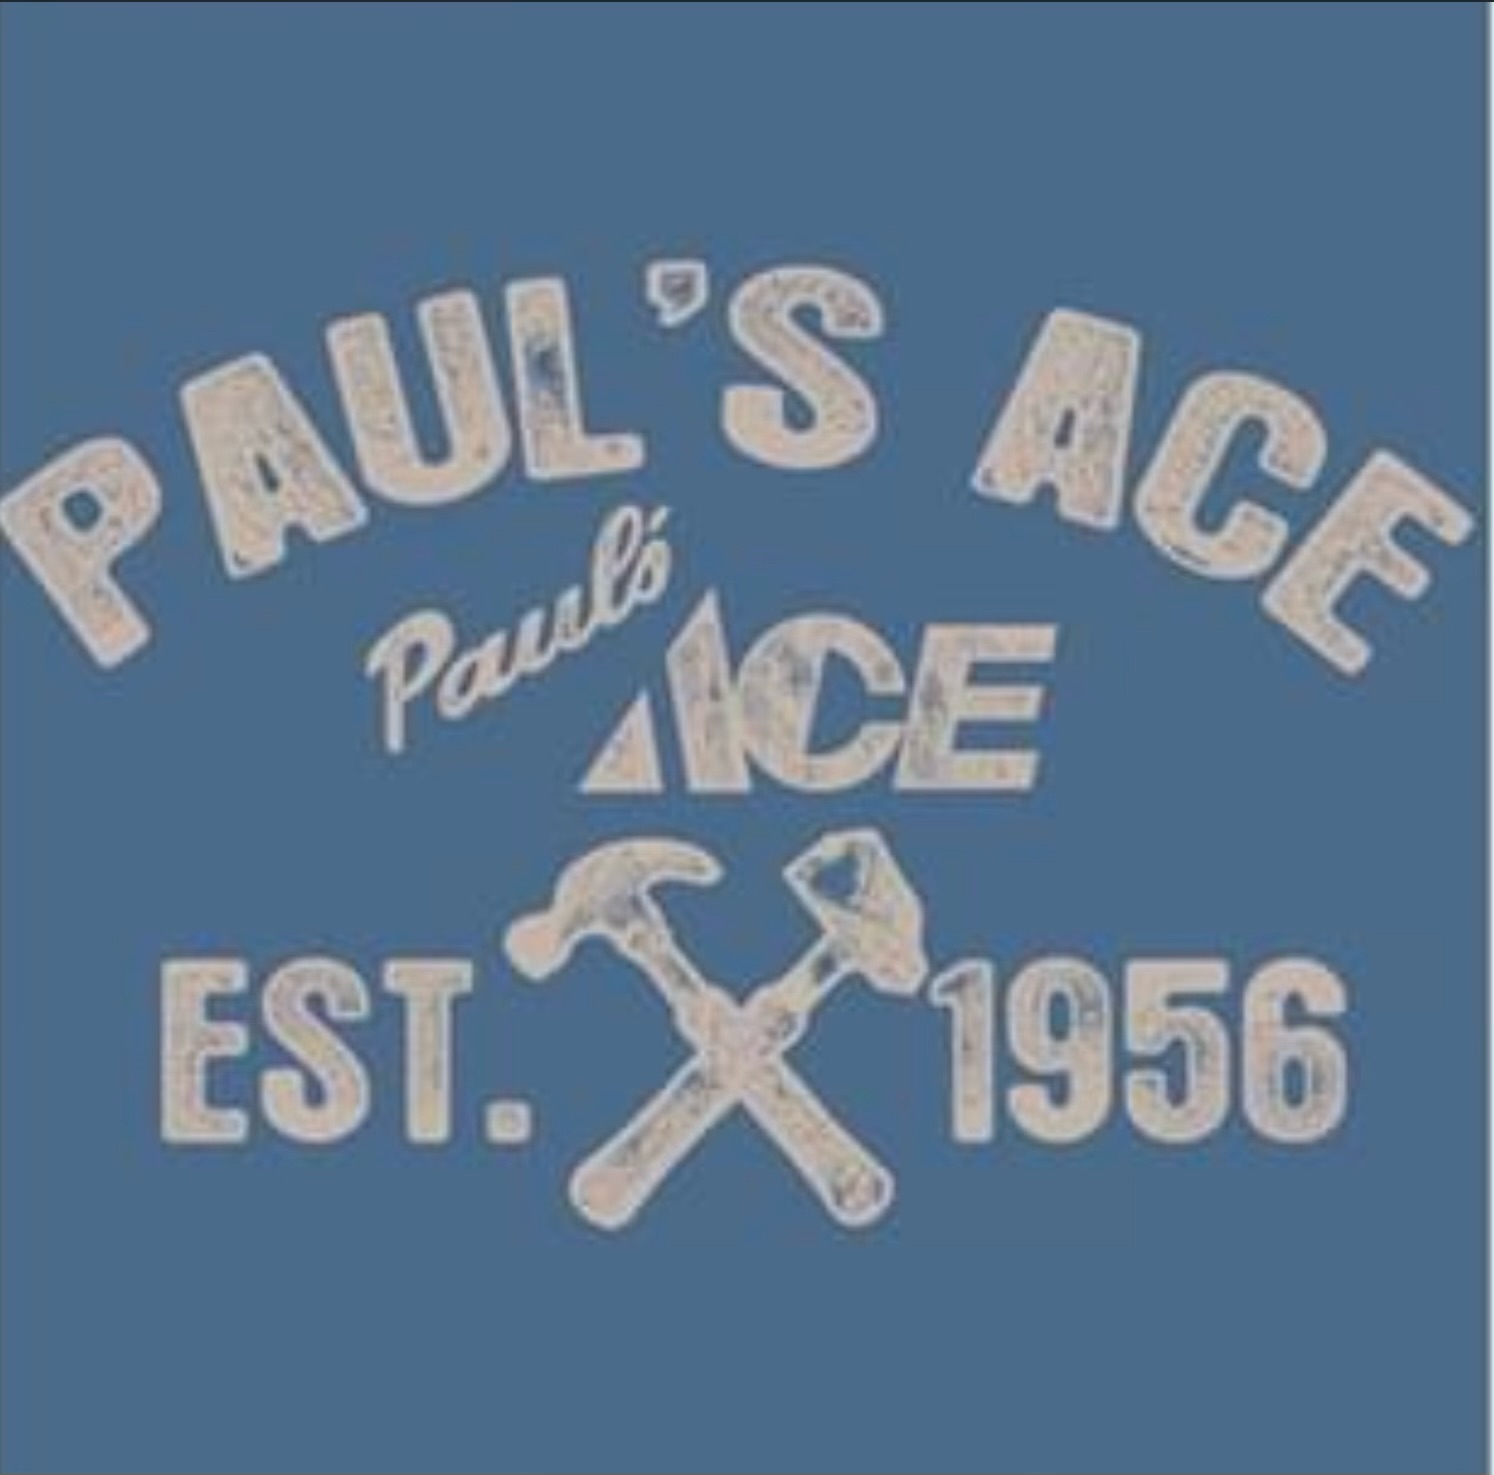 Paul's Ace